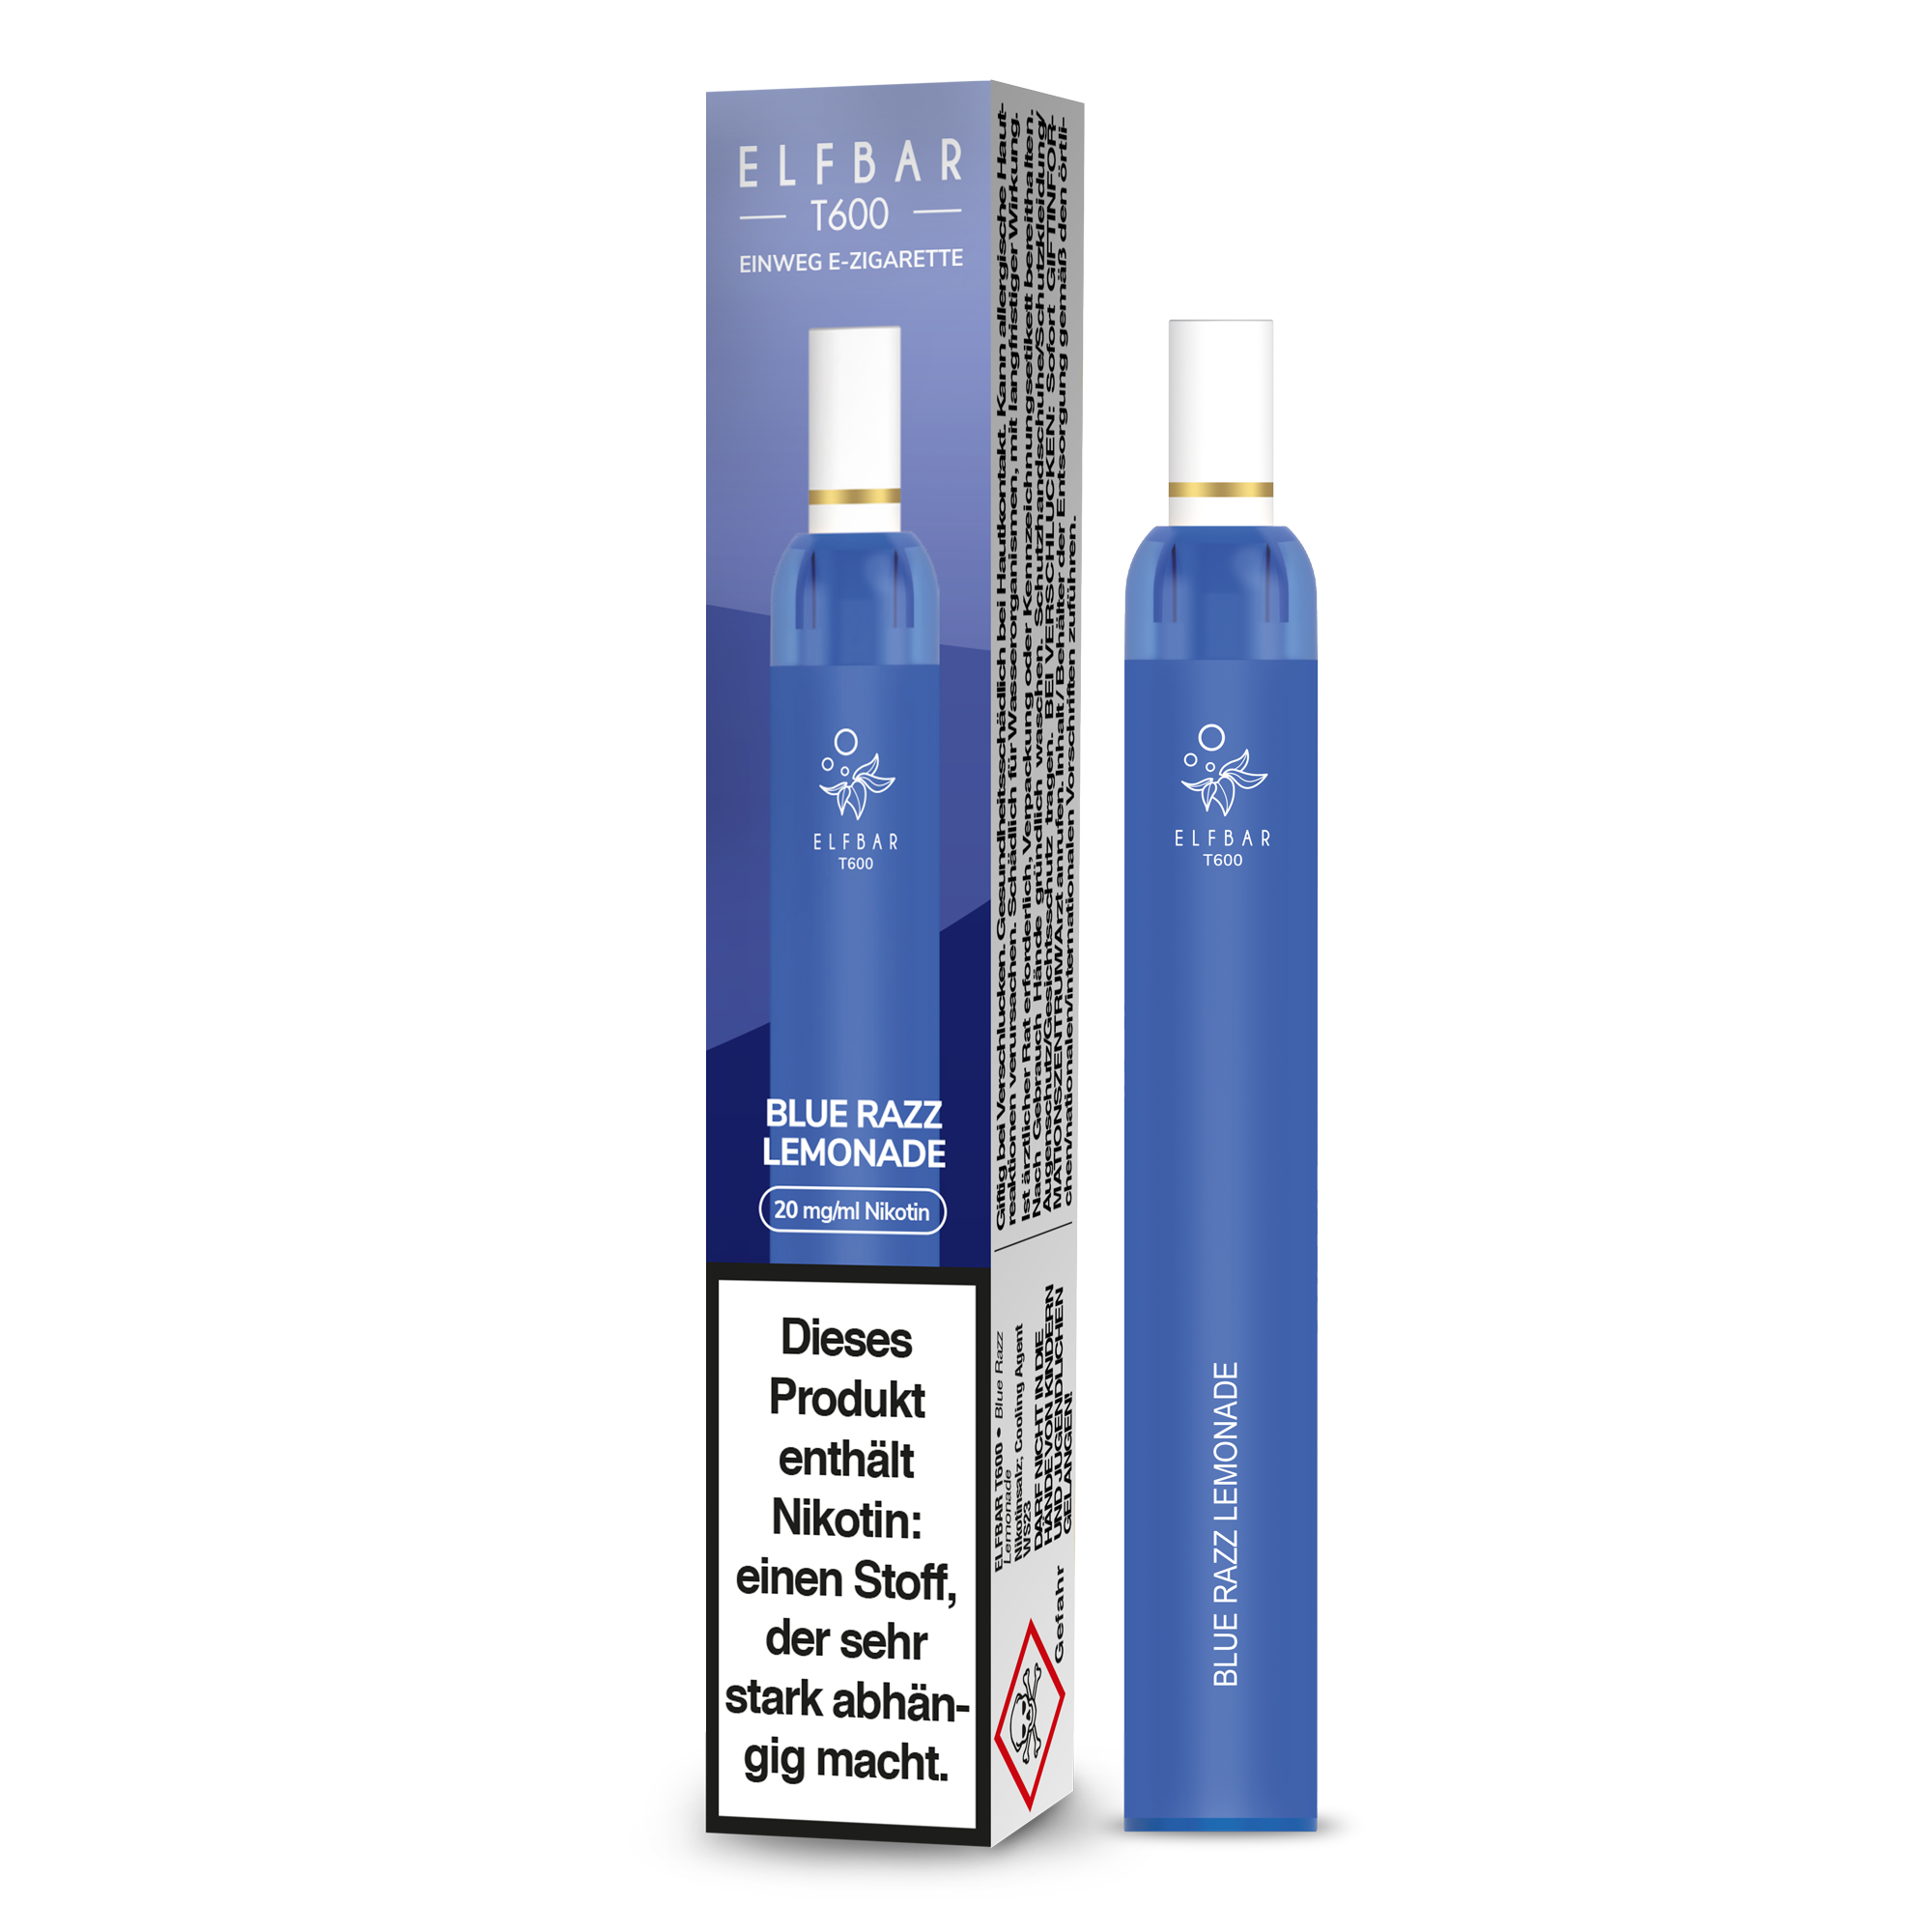 Elf Bar T600 Einweg E-Zigarette - Blue Razz Lemonade 20 mg/ml